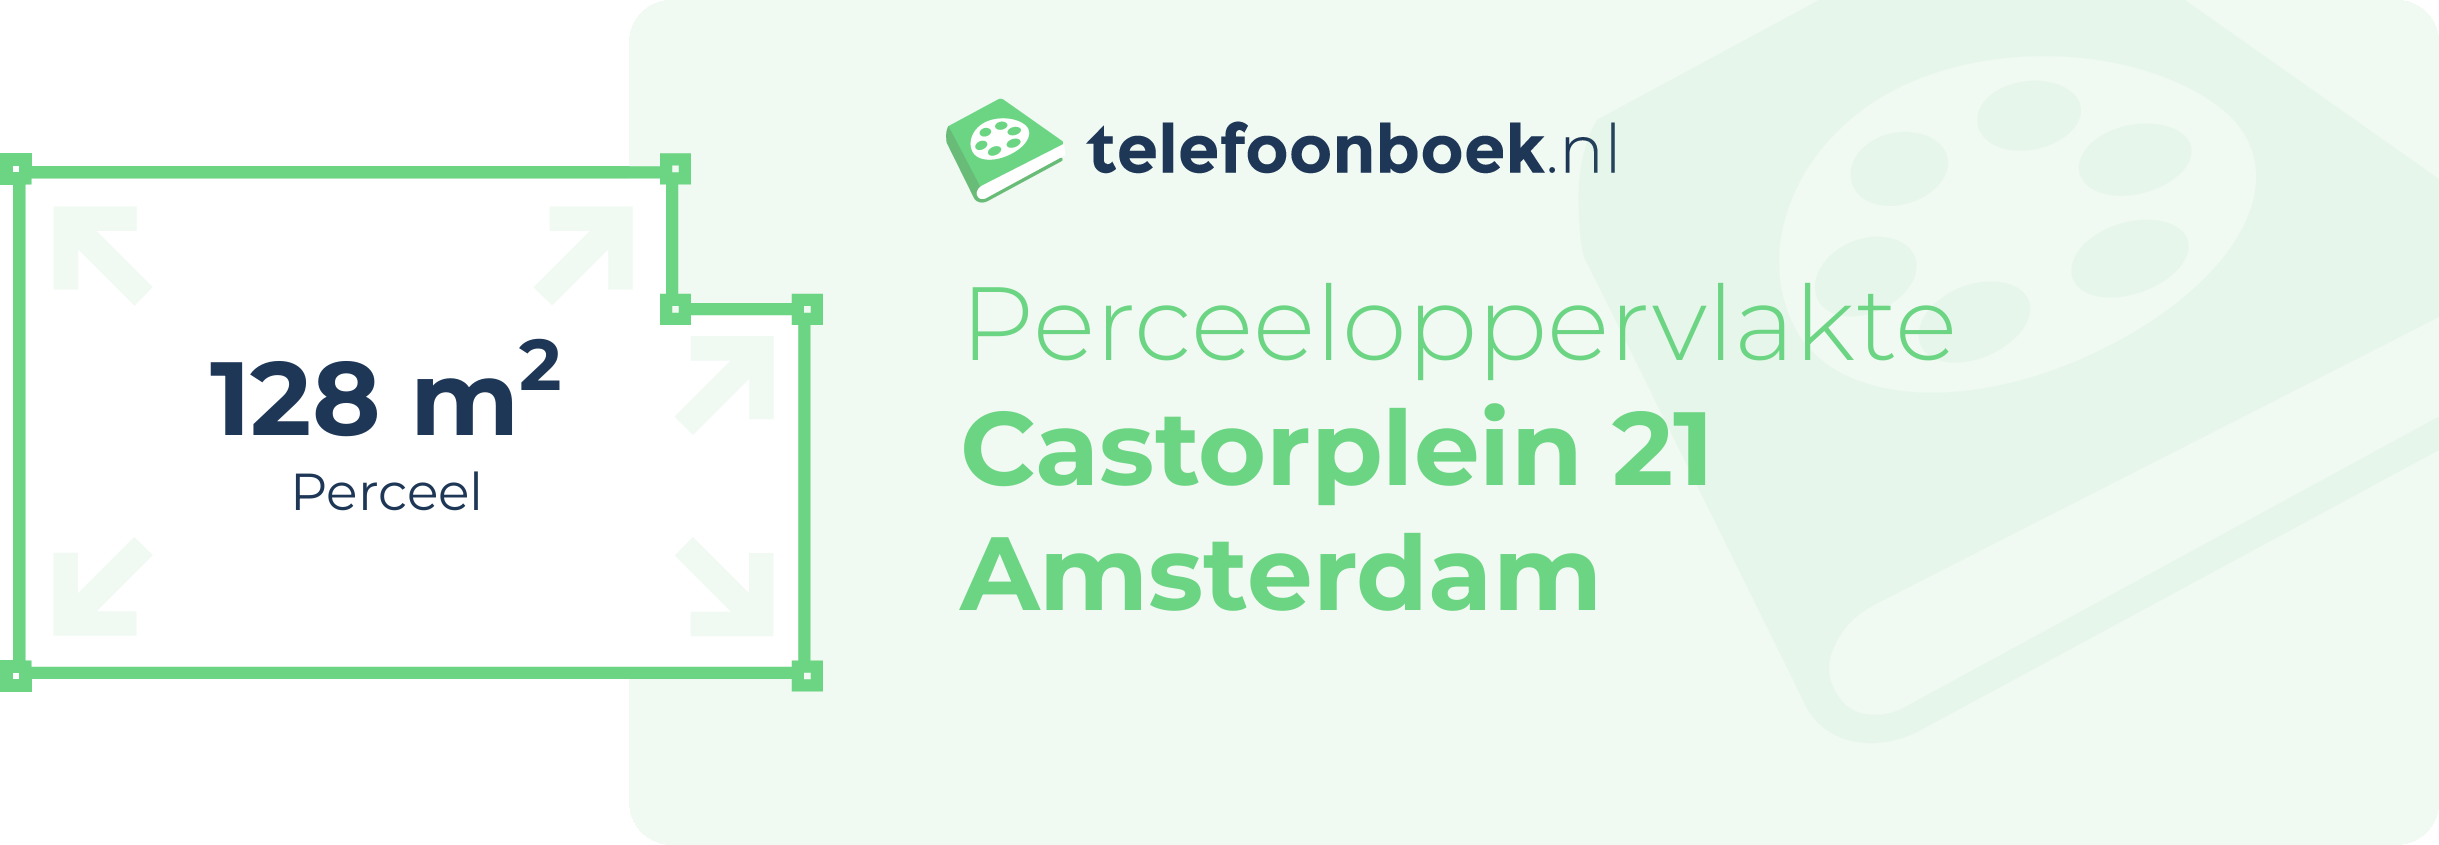 Perceeloppervlakte Castorplein 21 Amsterdam